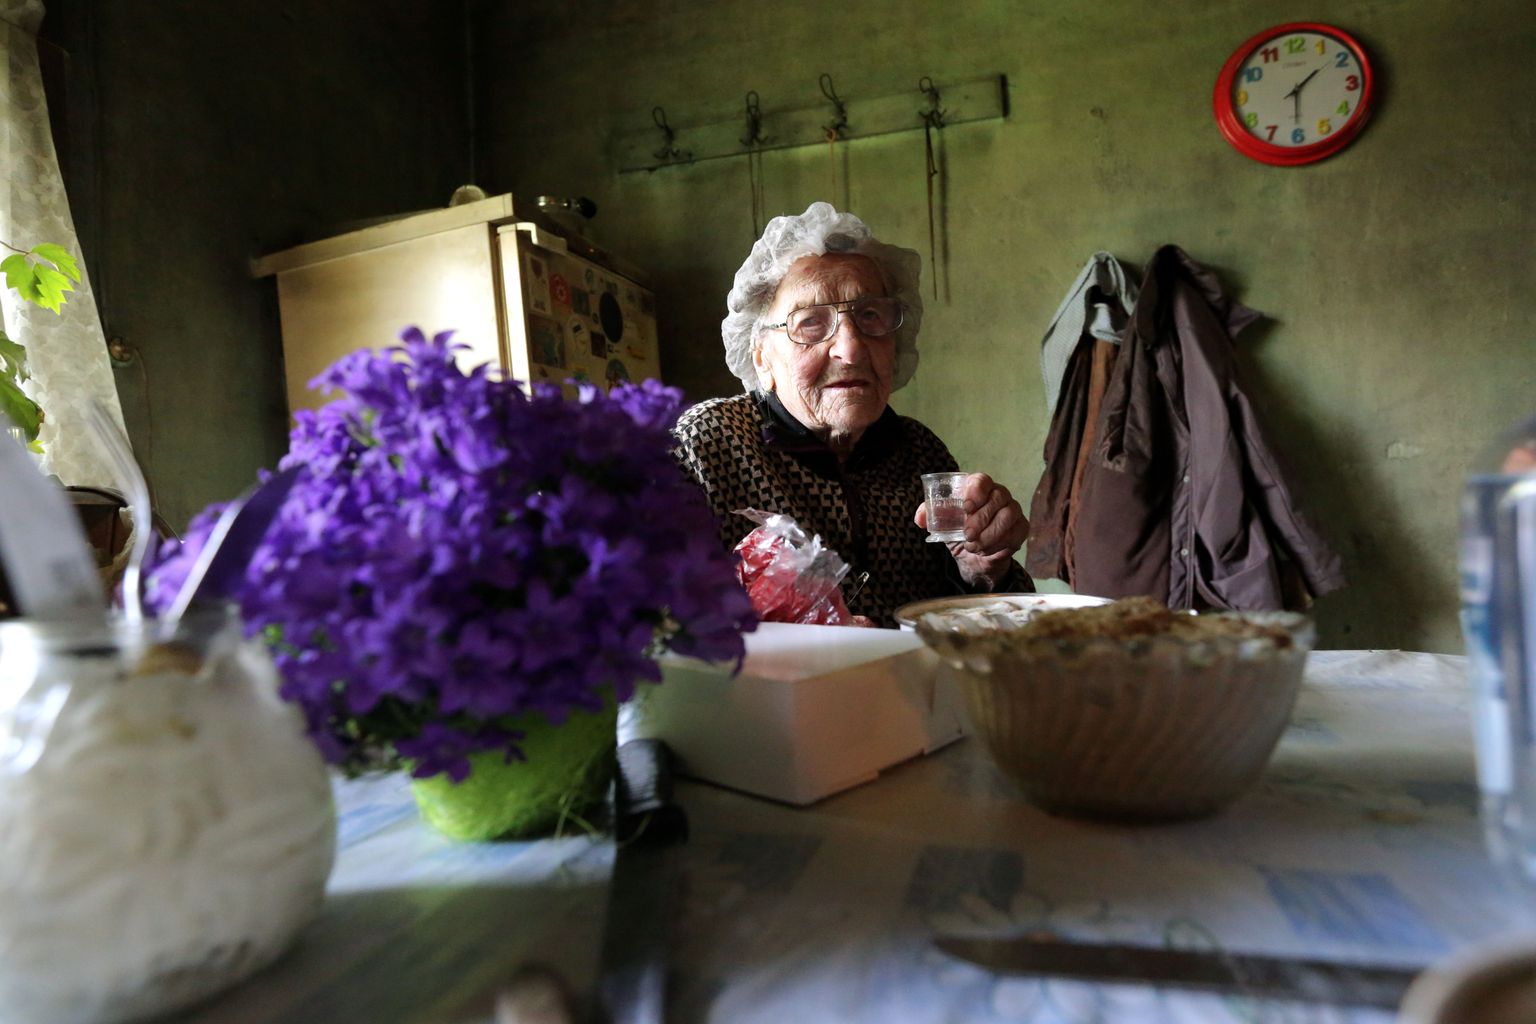 Täna 102-aastaseks saava Marta-Johanna Viksi auks tõstsid reporter ja fotograaf pitsi juba eile. Perenaine põhjani ei võtnud, ütles, et peab veel köögis toimetama.